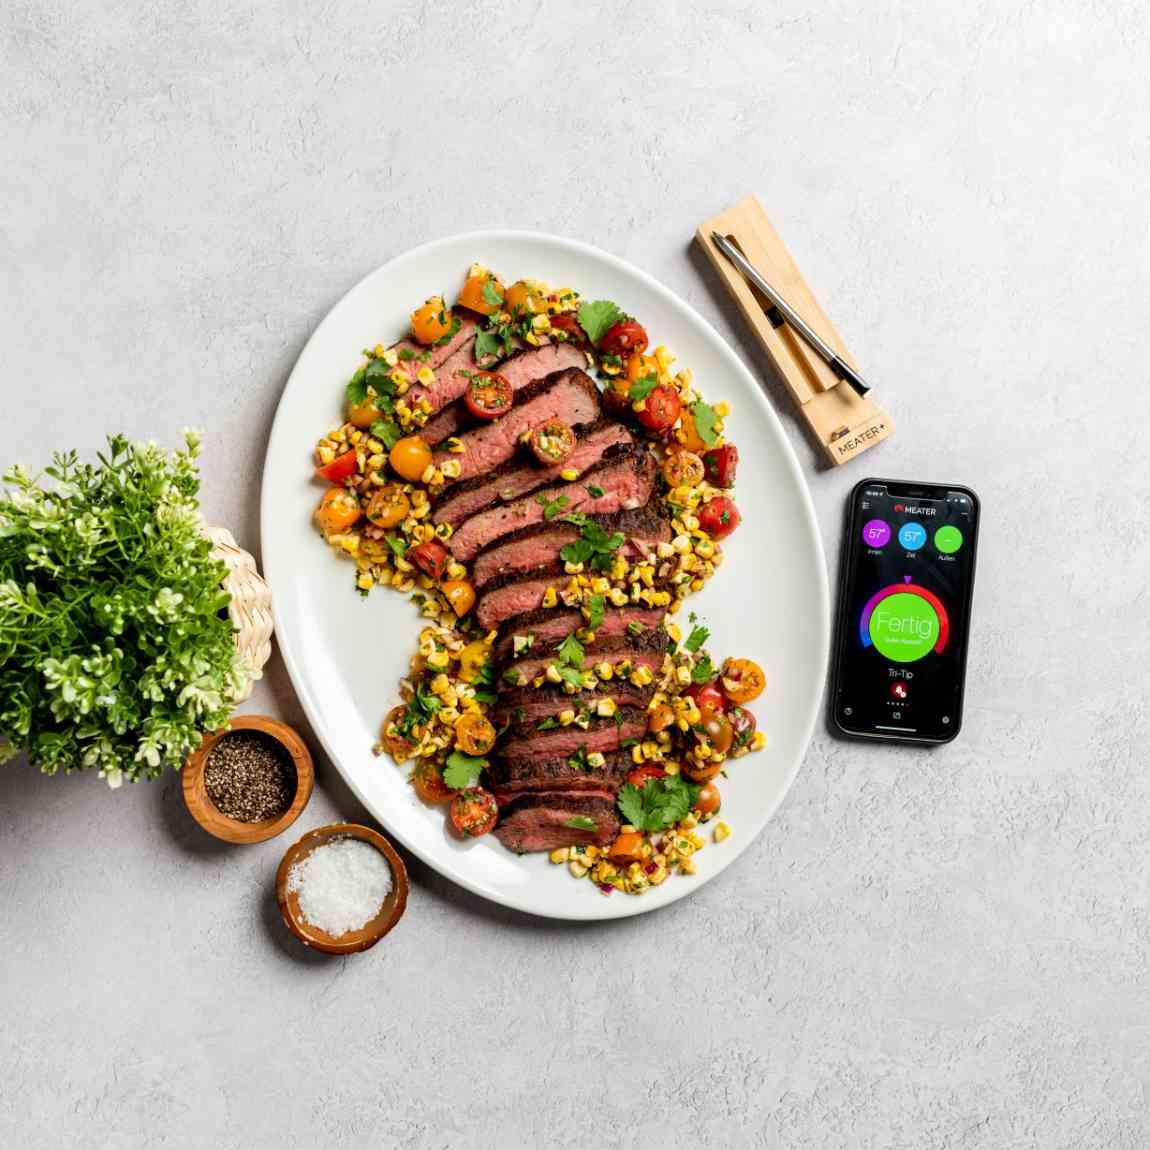 Meater Plus - Smartes Fleischthermometer - silber_Lifestyle_Steakteller mit Gemüse und App dazu